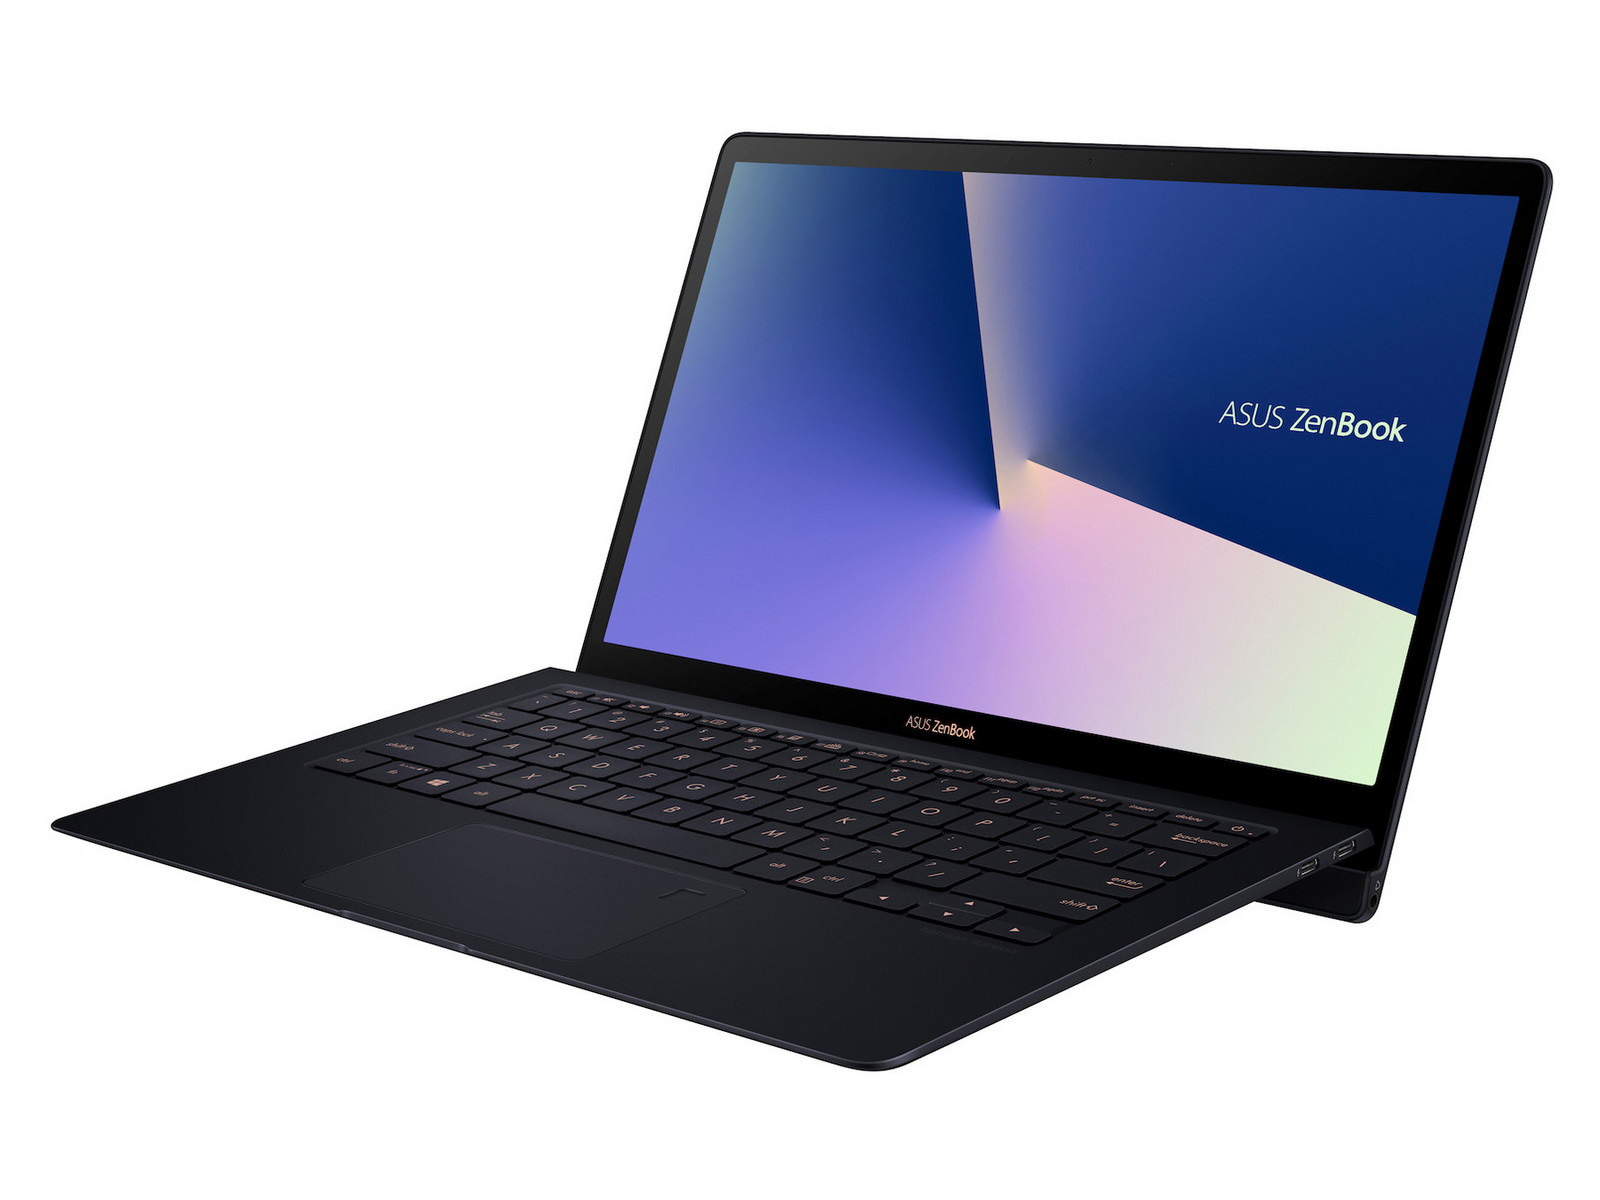 Asus ZenBook S - Notebookcheck.net External Reviews